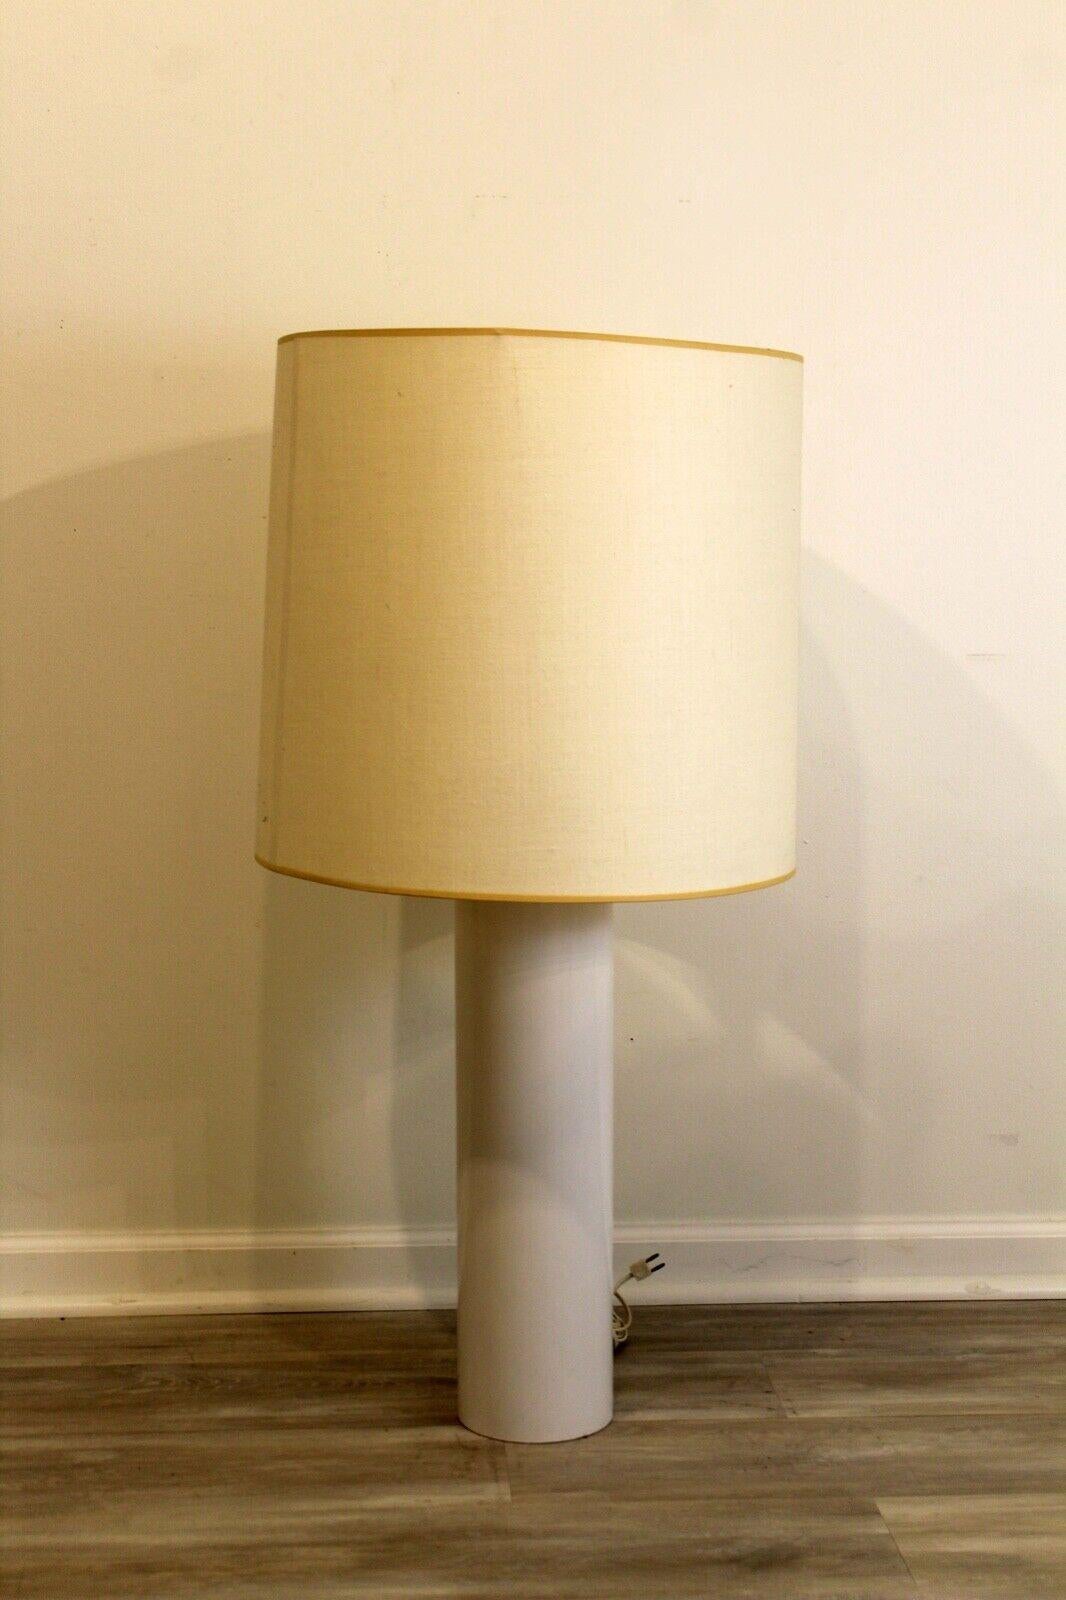 Le Shoppe Too présente cette lampe de table minimaliste en céramique tubulaire blanche. Signé Nessen. En très bon état. Dimensions : 18,75